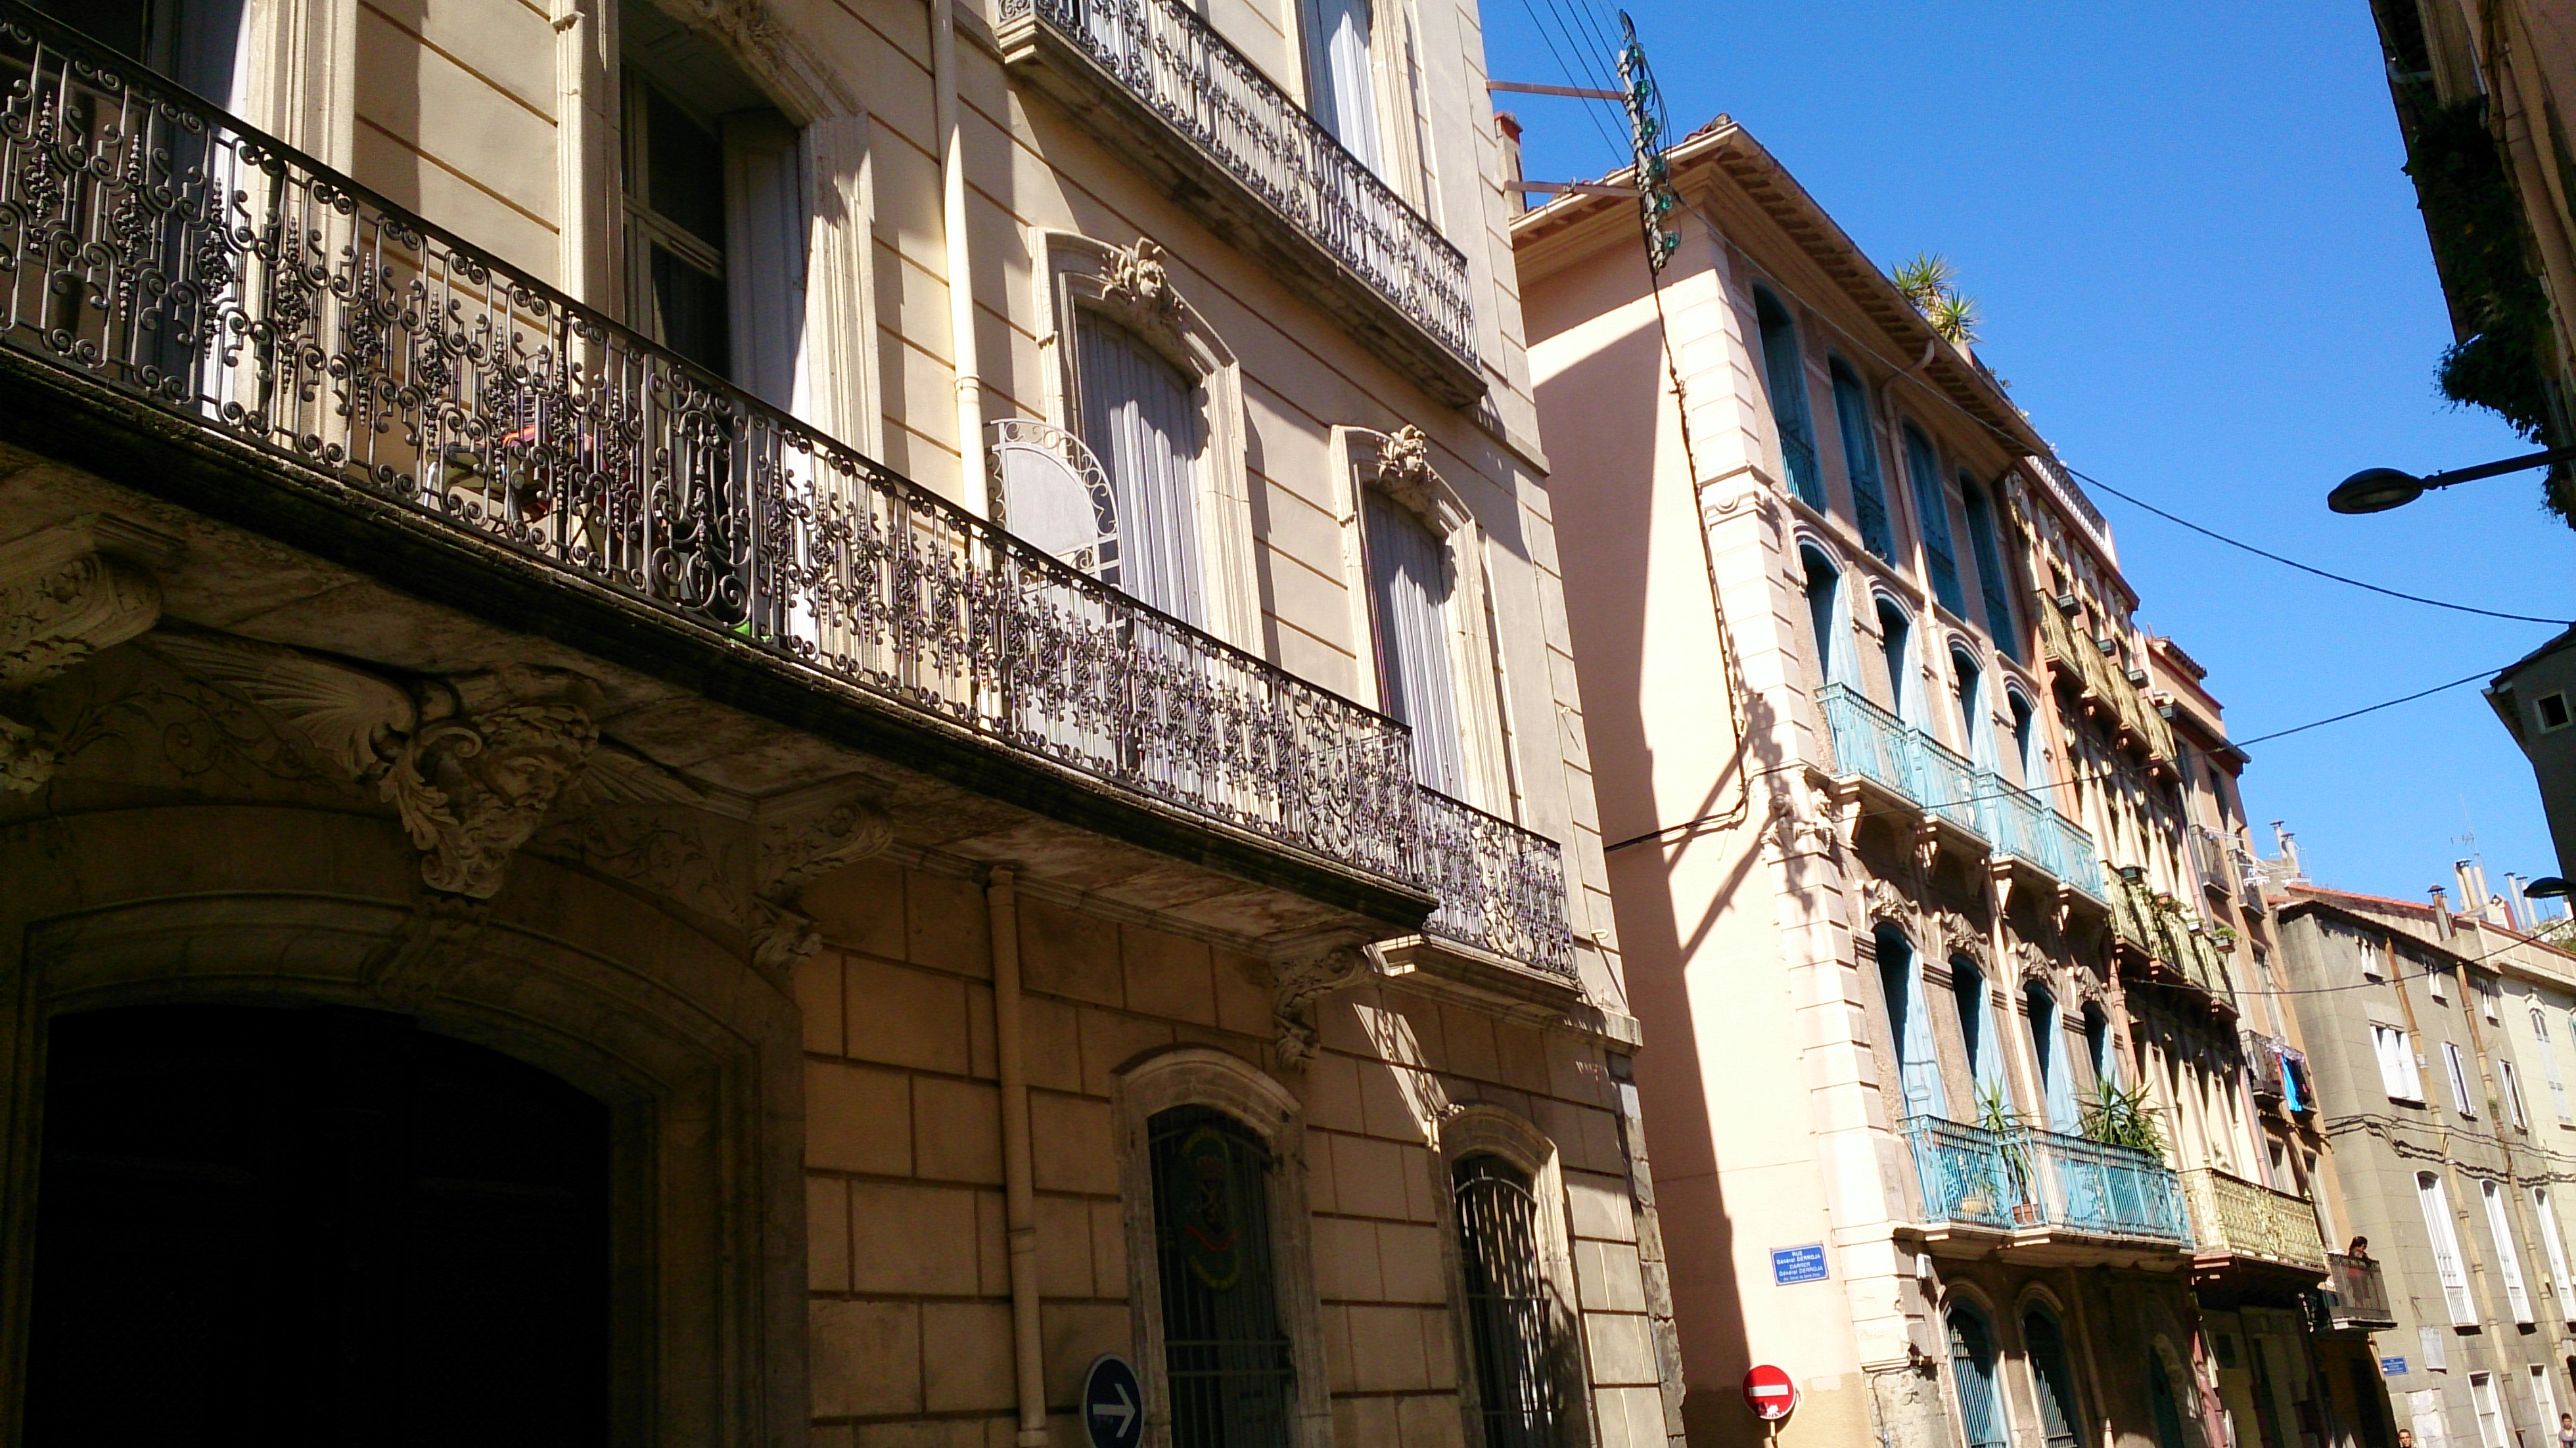 Wrought iron balconies common in Perpignan